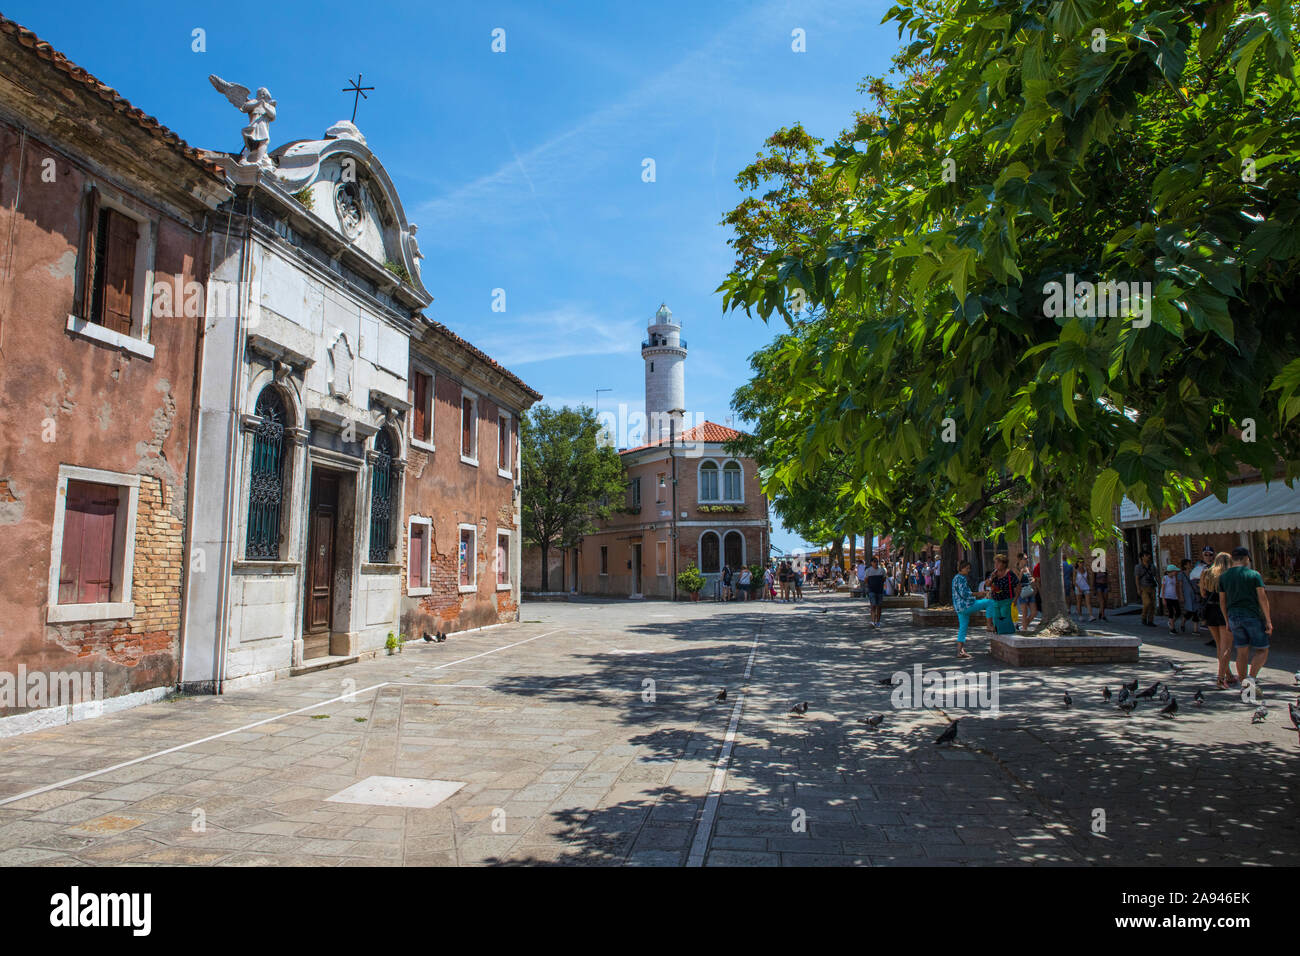 Murano, Italien - 19. Juli 2019: Blick auf die Calle Bressagio auf der venezianischen Insel Murano in Italien. Der Leuchtturm, bekannt als Faro di Murano, ist in Th Stockfoto